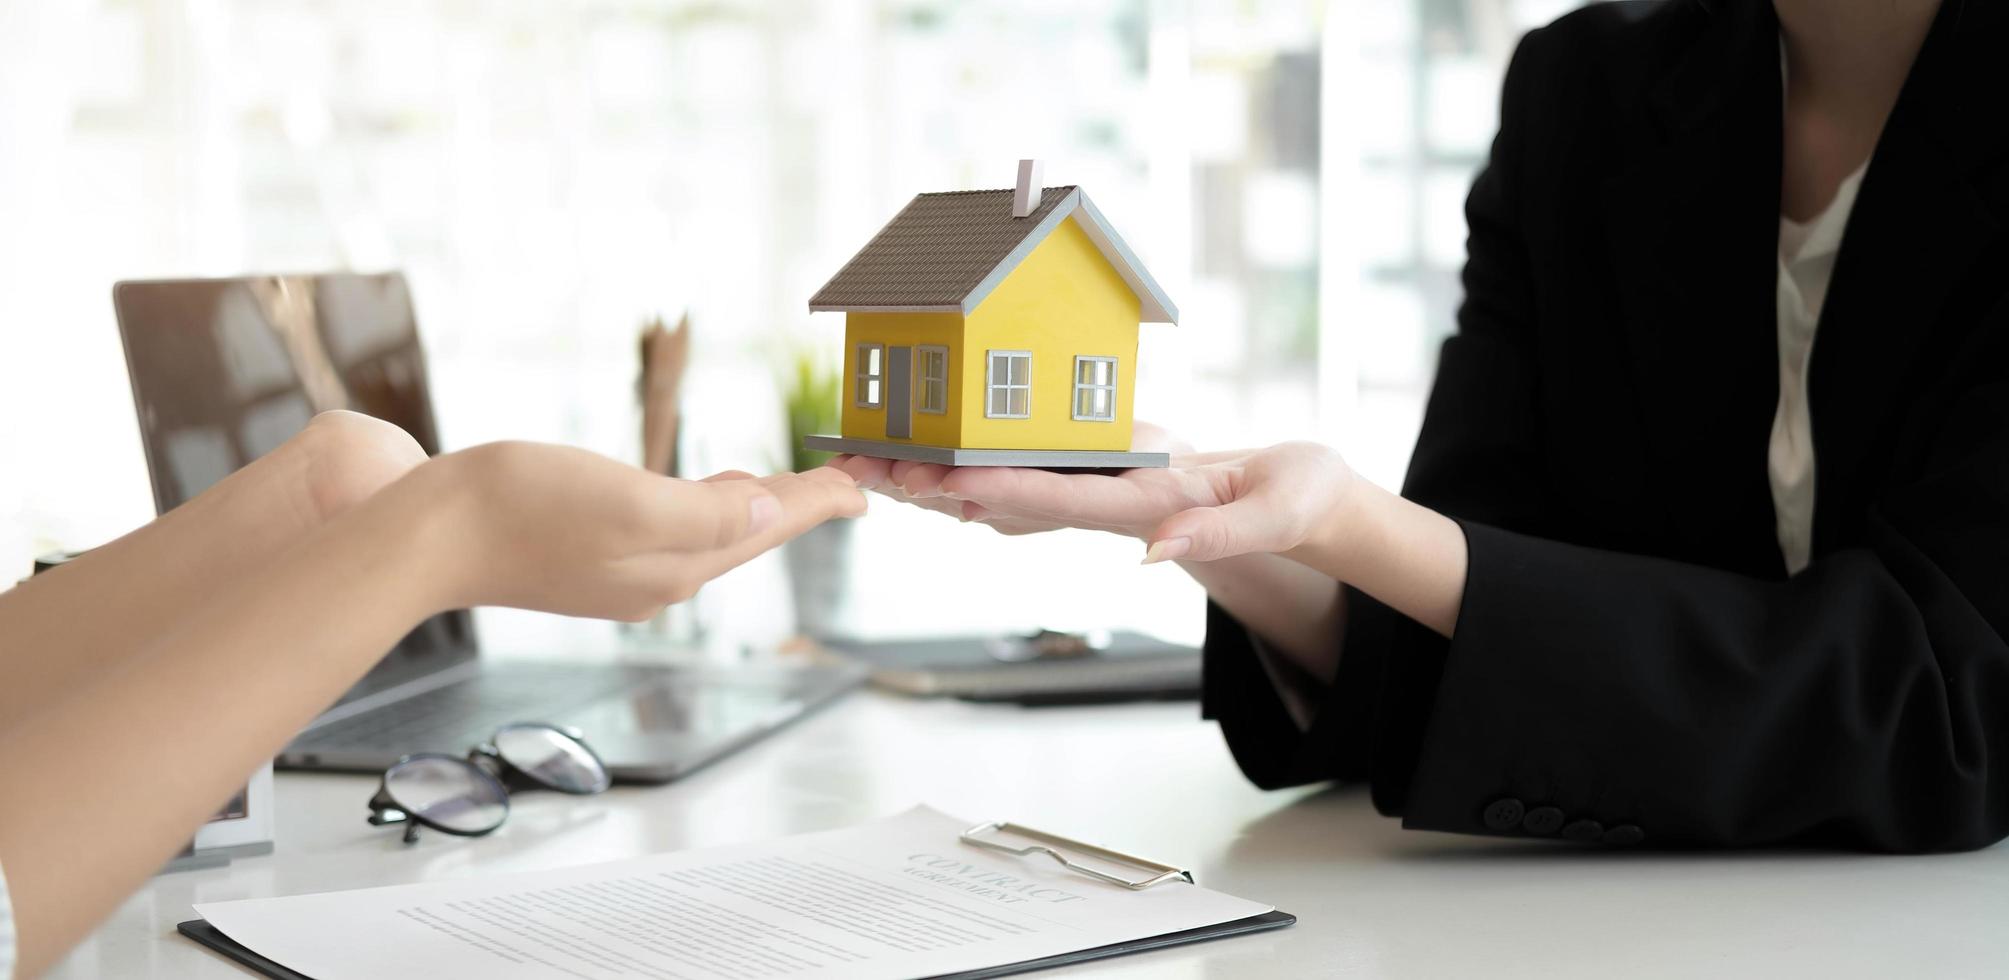 vastgoedbedrijf om huizen en land te kopen, levert sleutels en huizen aan klanten nadat ze ermee instemden een overeenkomst voor de aankoop van een huis te sluiten en een leningsovereenkomst te sluiten. gesprek met een makelaar foto